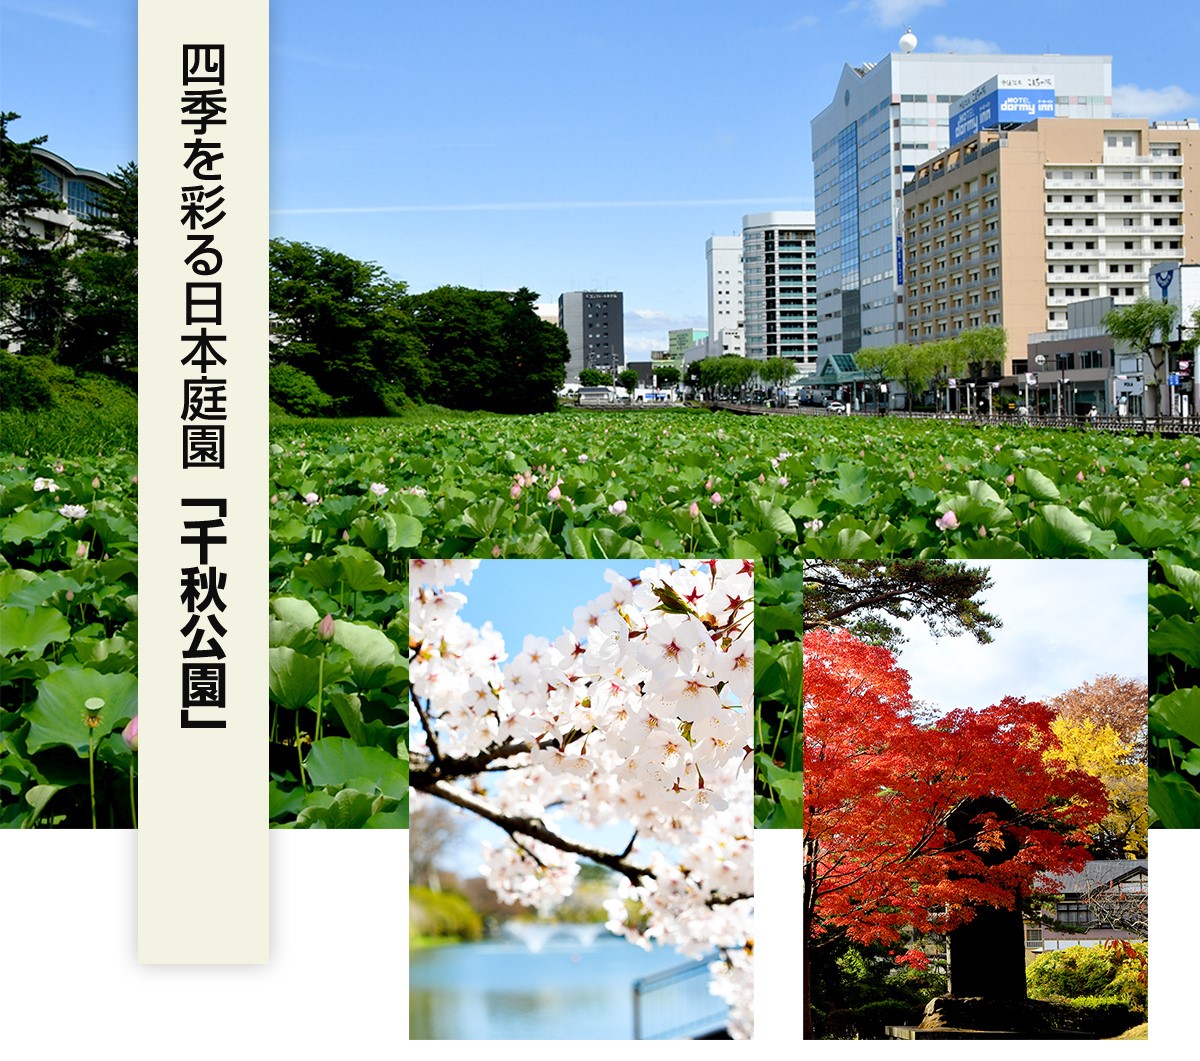 四季を彩る日本庭園「千秋公園」